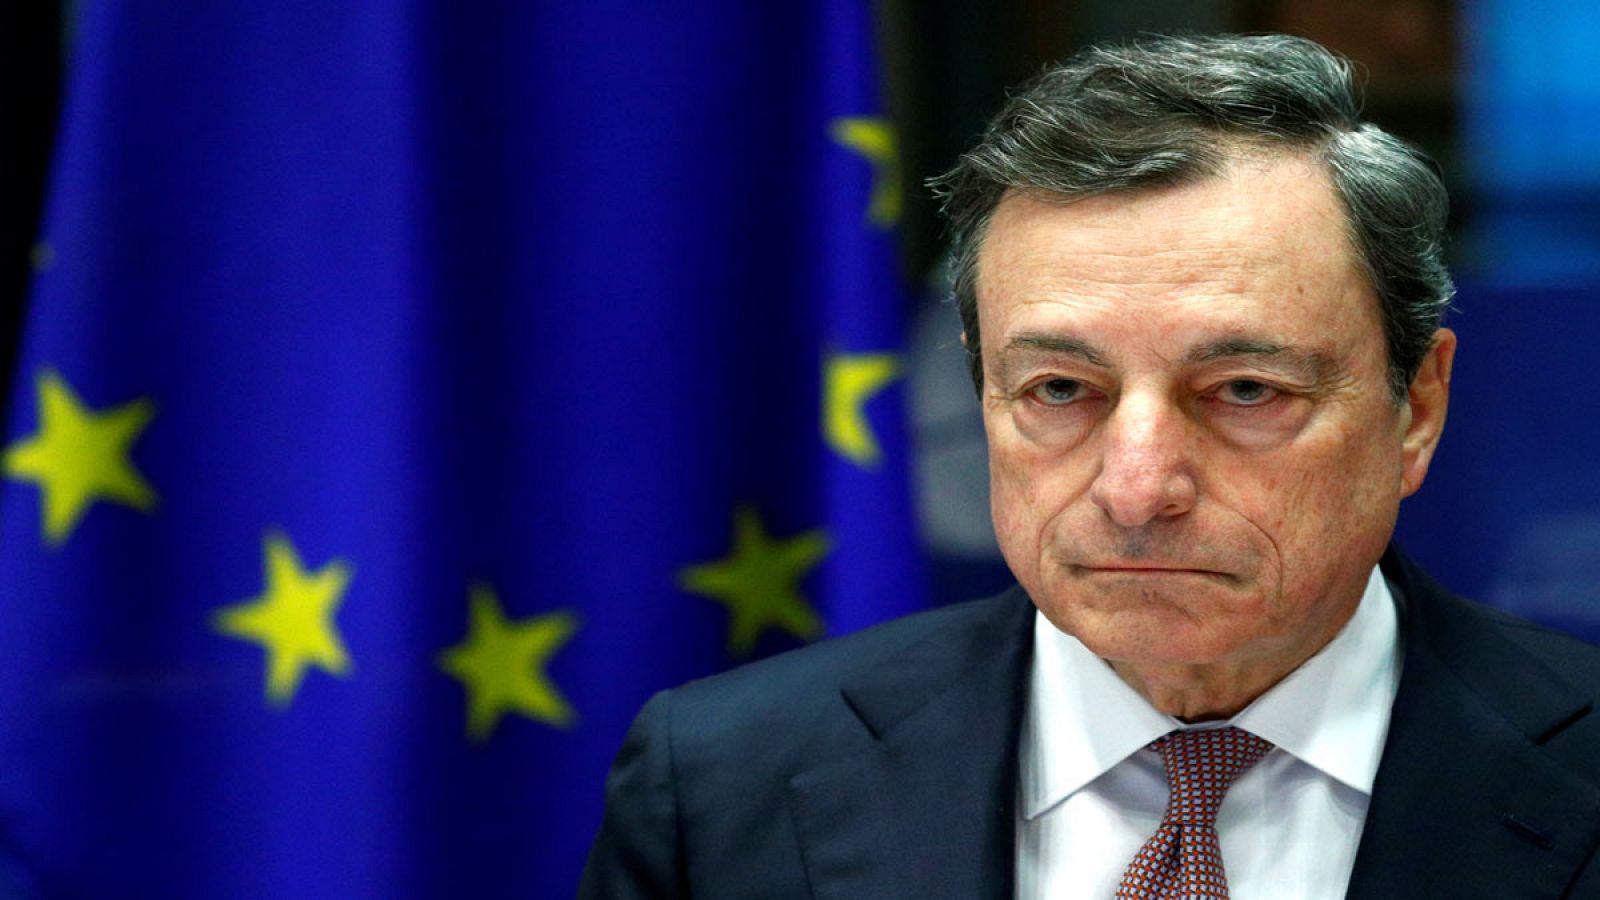 El presidente del BCE, Mario Draghi, comparece en Bruselas